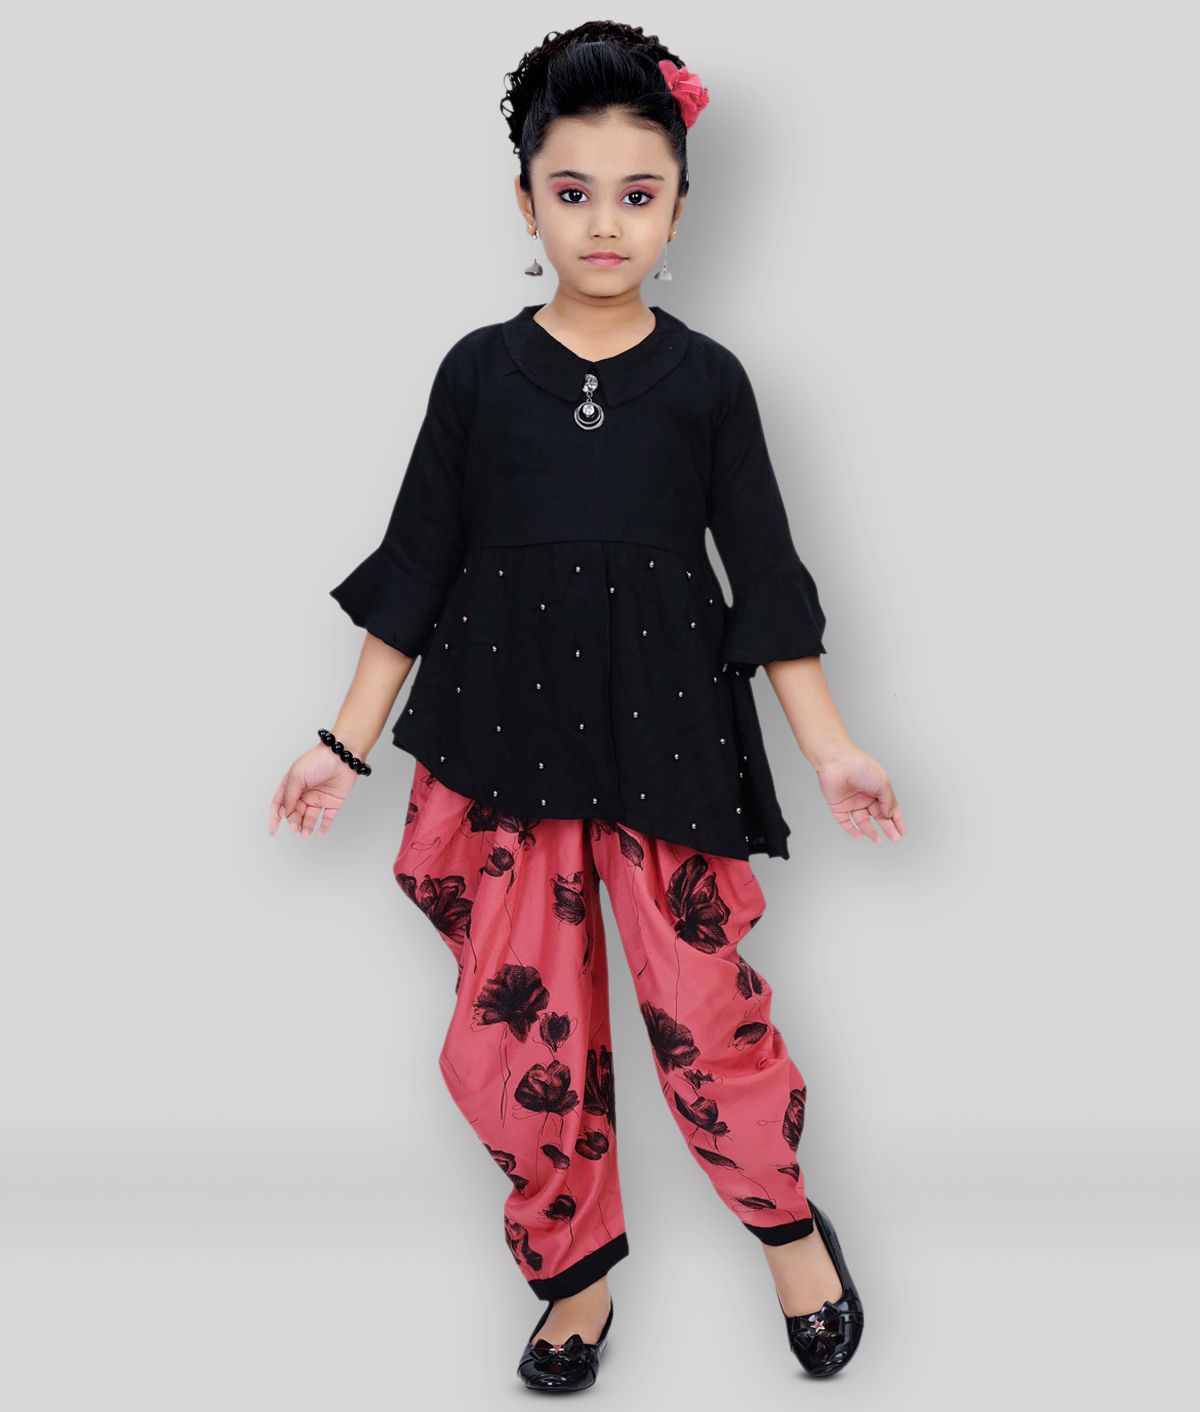     			Arshia Fashions - Pink Rayon Girls Patiala Kurta Sets ( Pack of 1 )